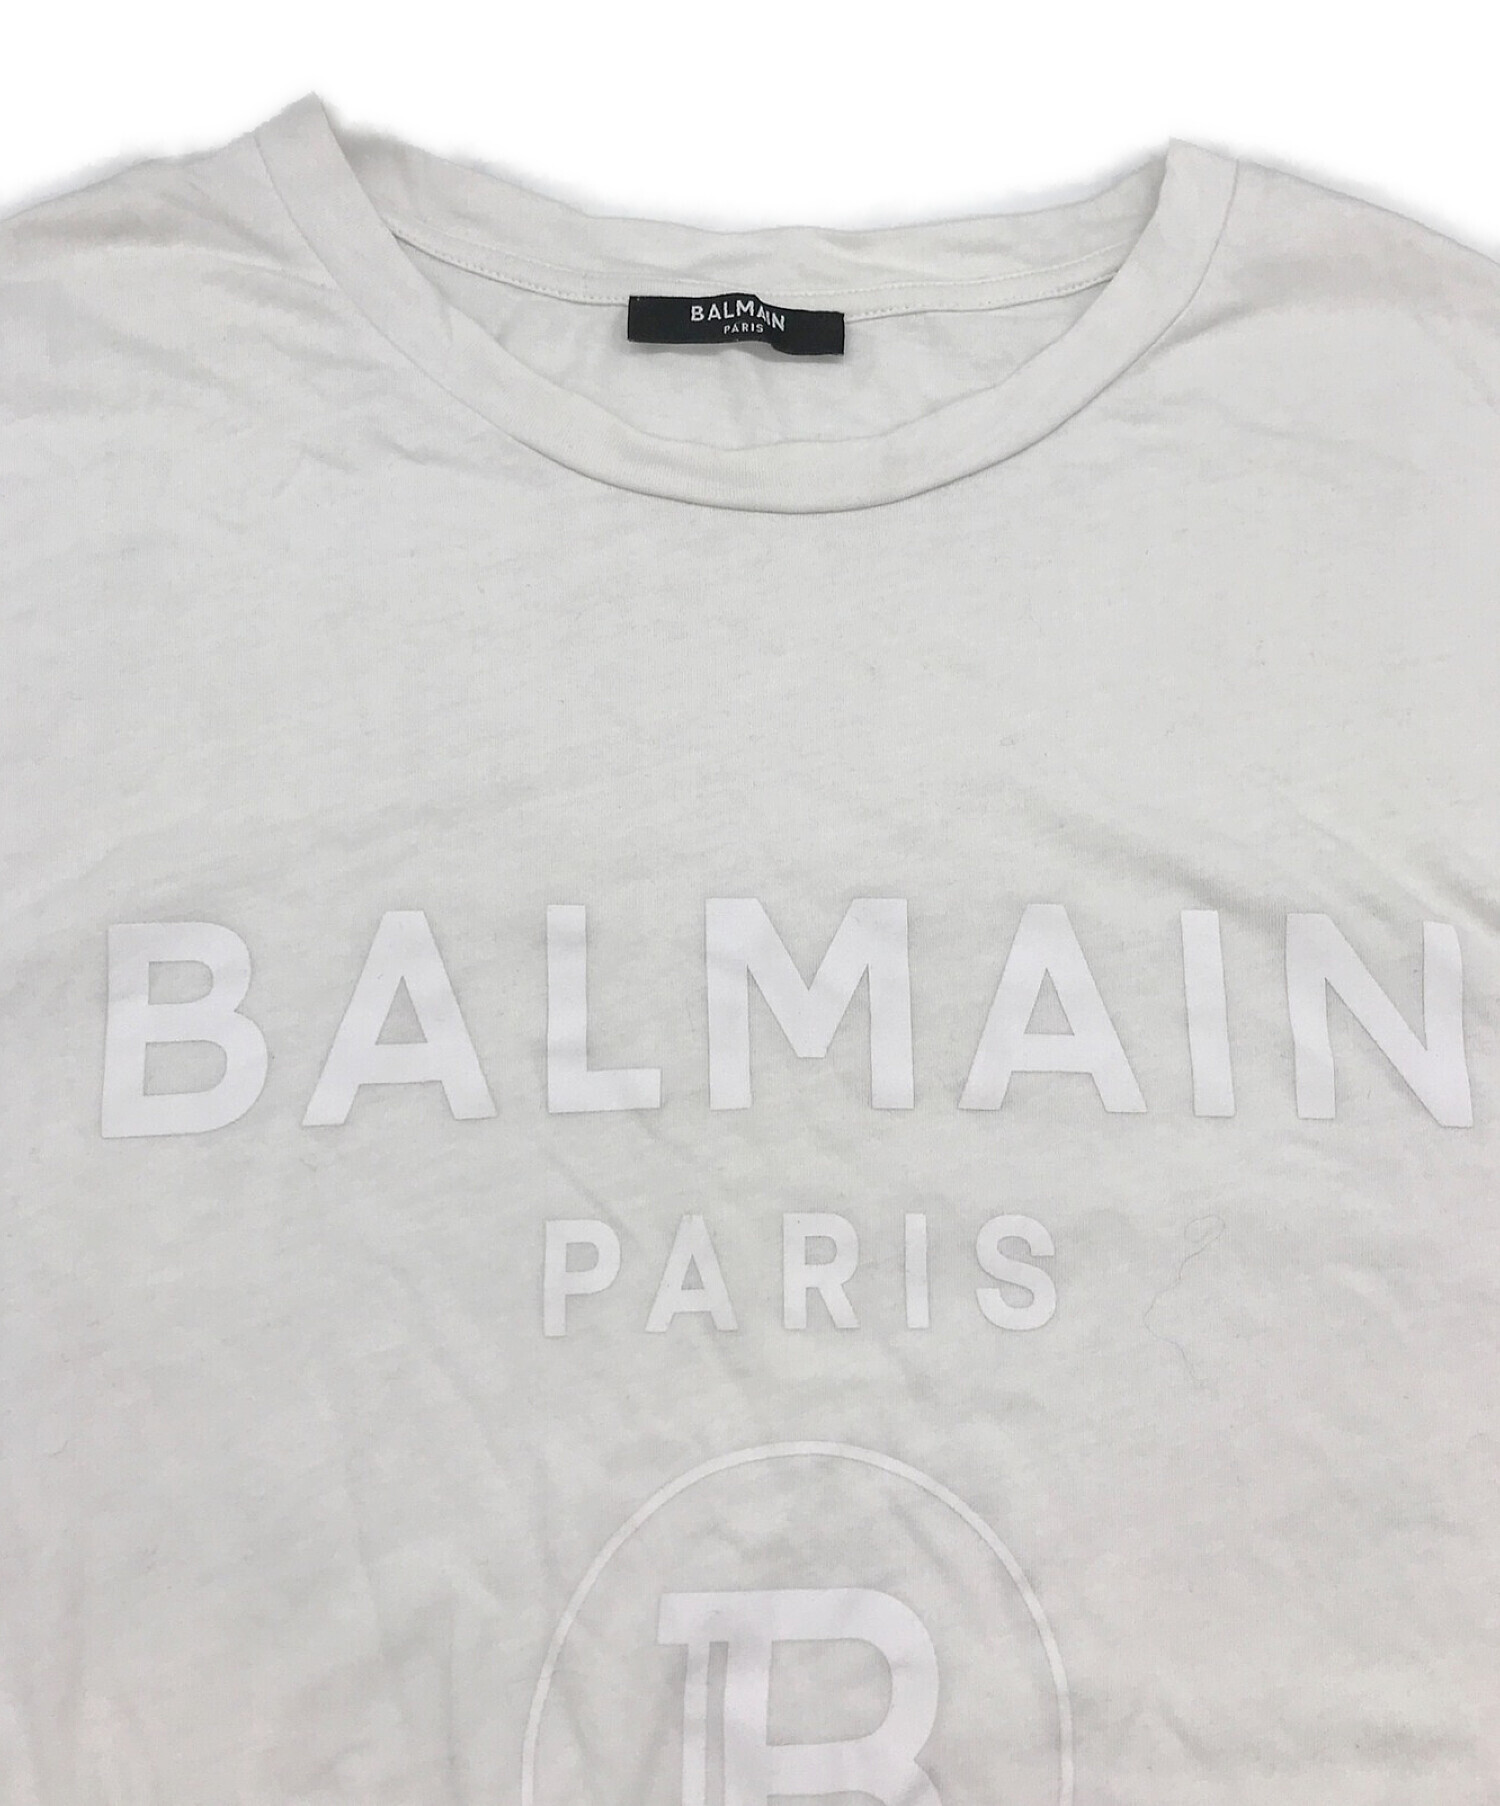 BALMAIN バルマン ロゴプリント ノースリーブTシャツ カットソー 8270 326I ホワイト405センチ肩幅